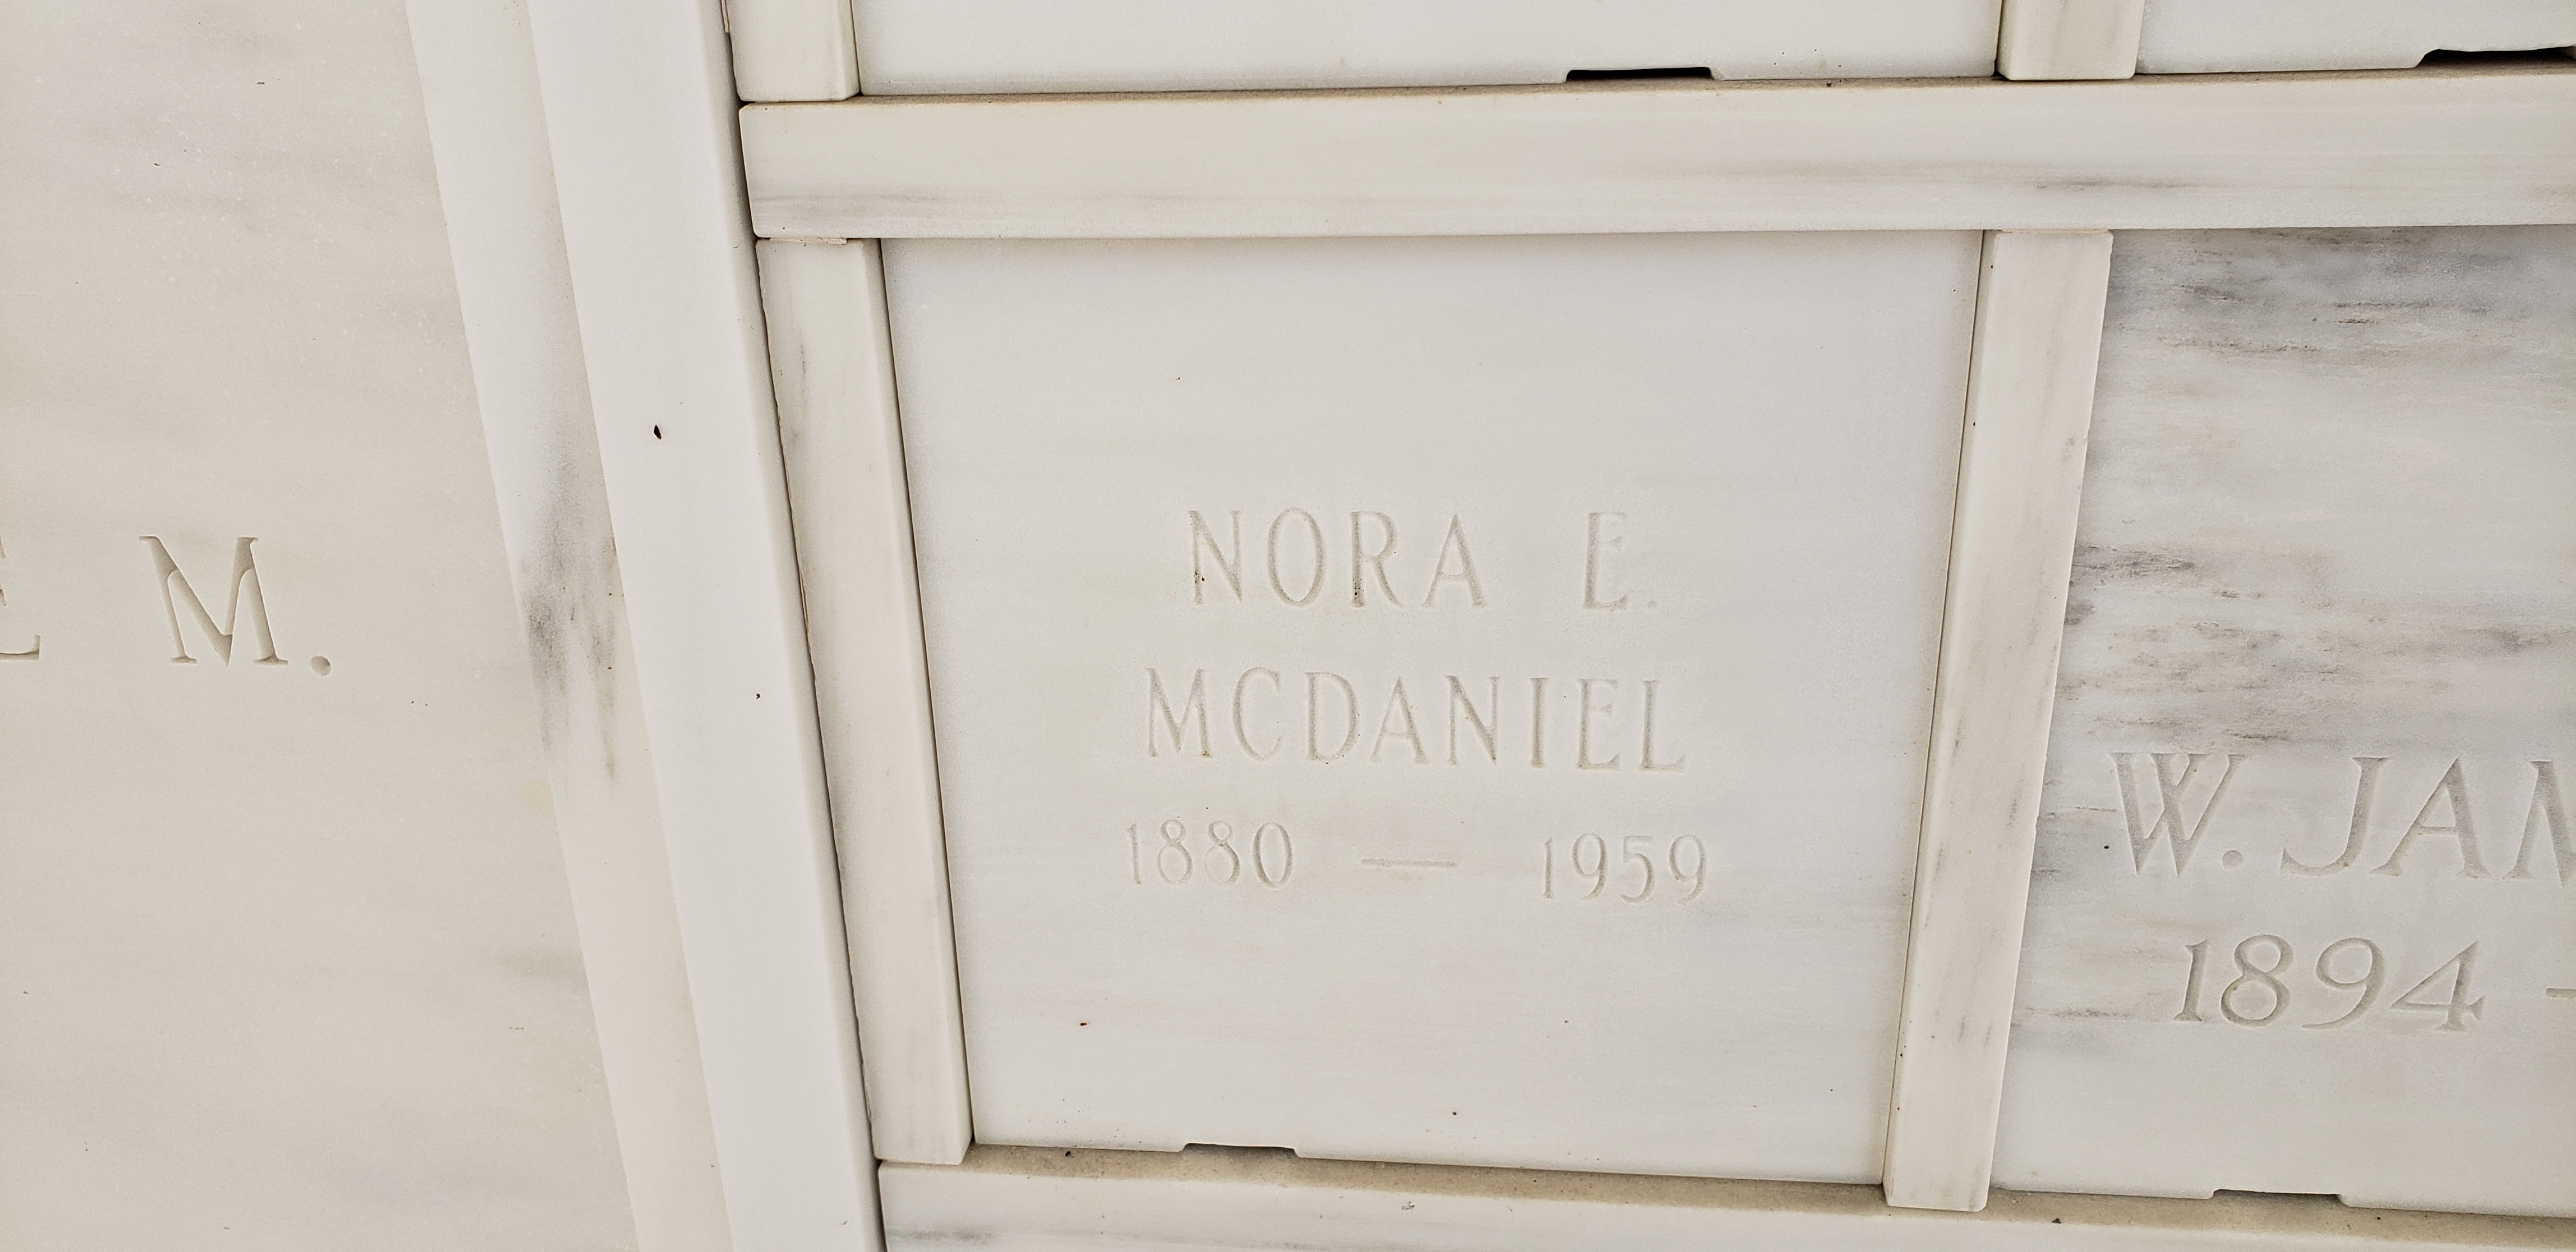 Nora E McDaniel